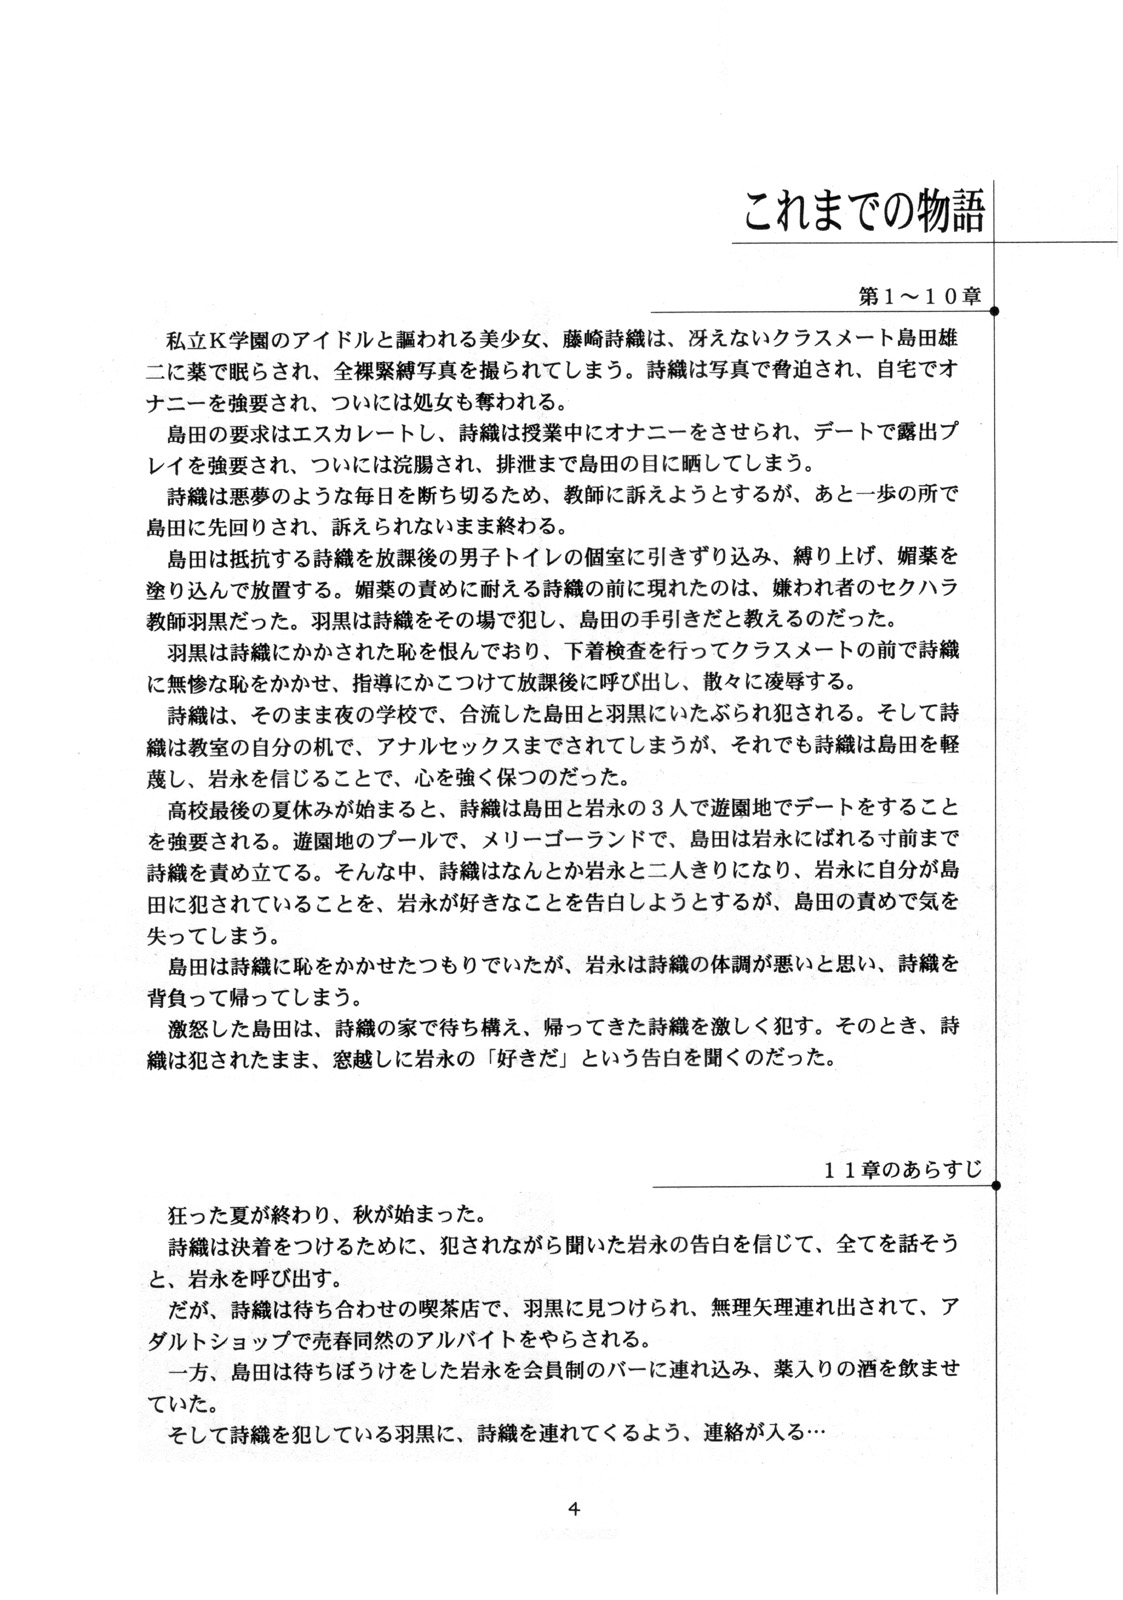 [HIGH RISK REVOLUTION] Shiori Vol.12 Haitoku no Cinderella (Tokimeki Memorial) page 5 full